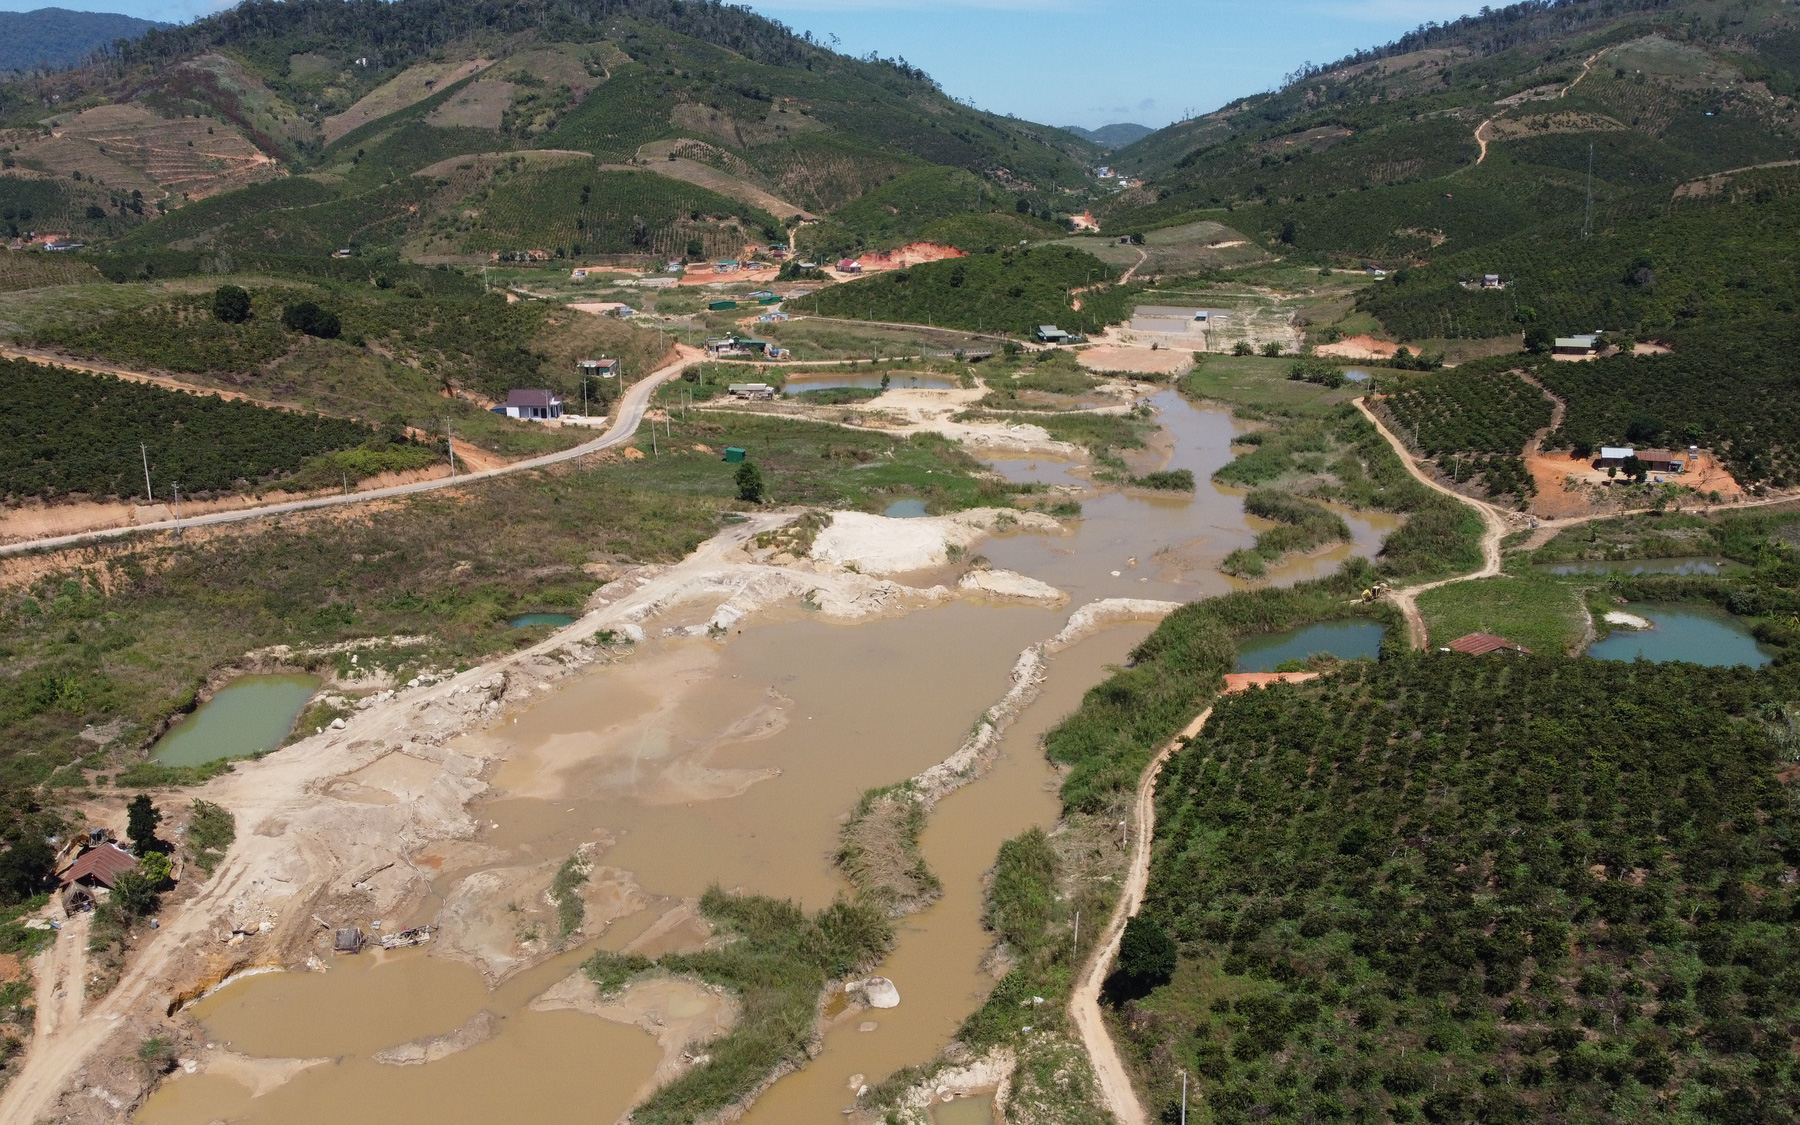 Lâm Đồng: Dự án thủy điện Sardeung bị thu hồi, dân mong muốn được trả lại đất sản xuất 